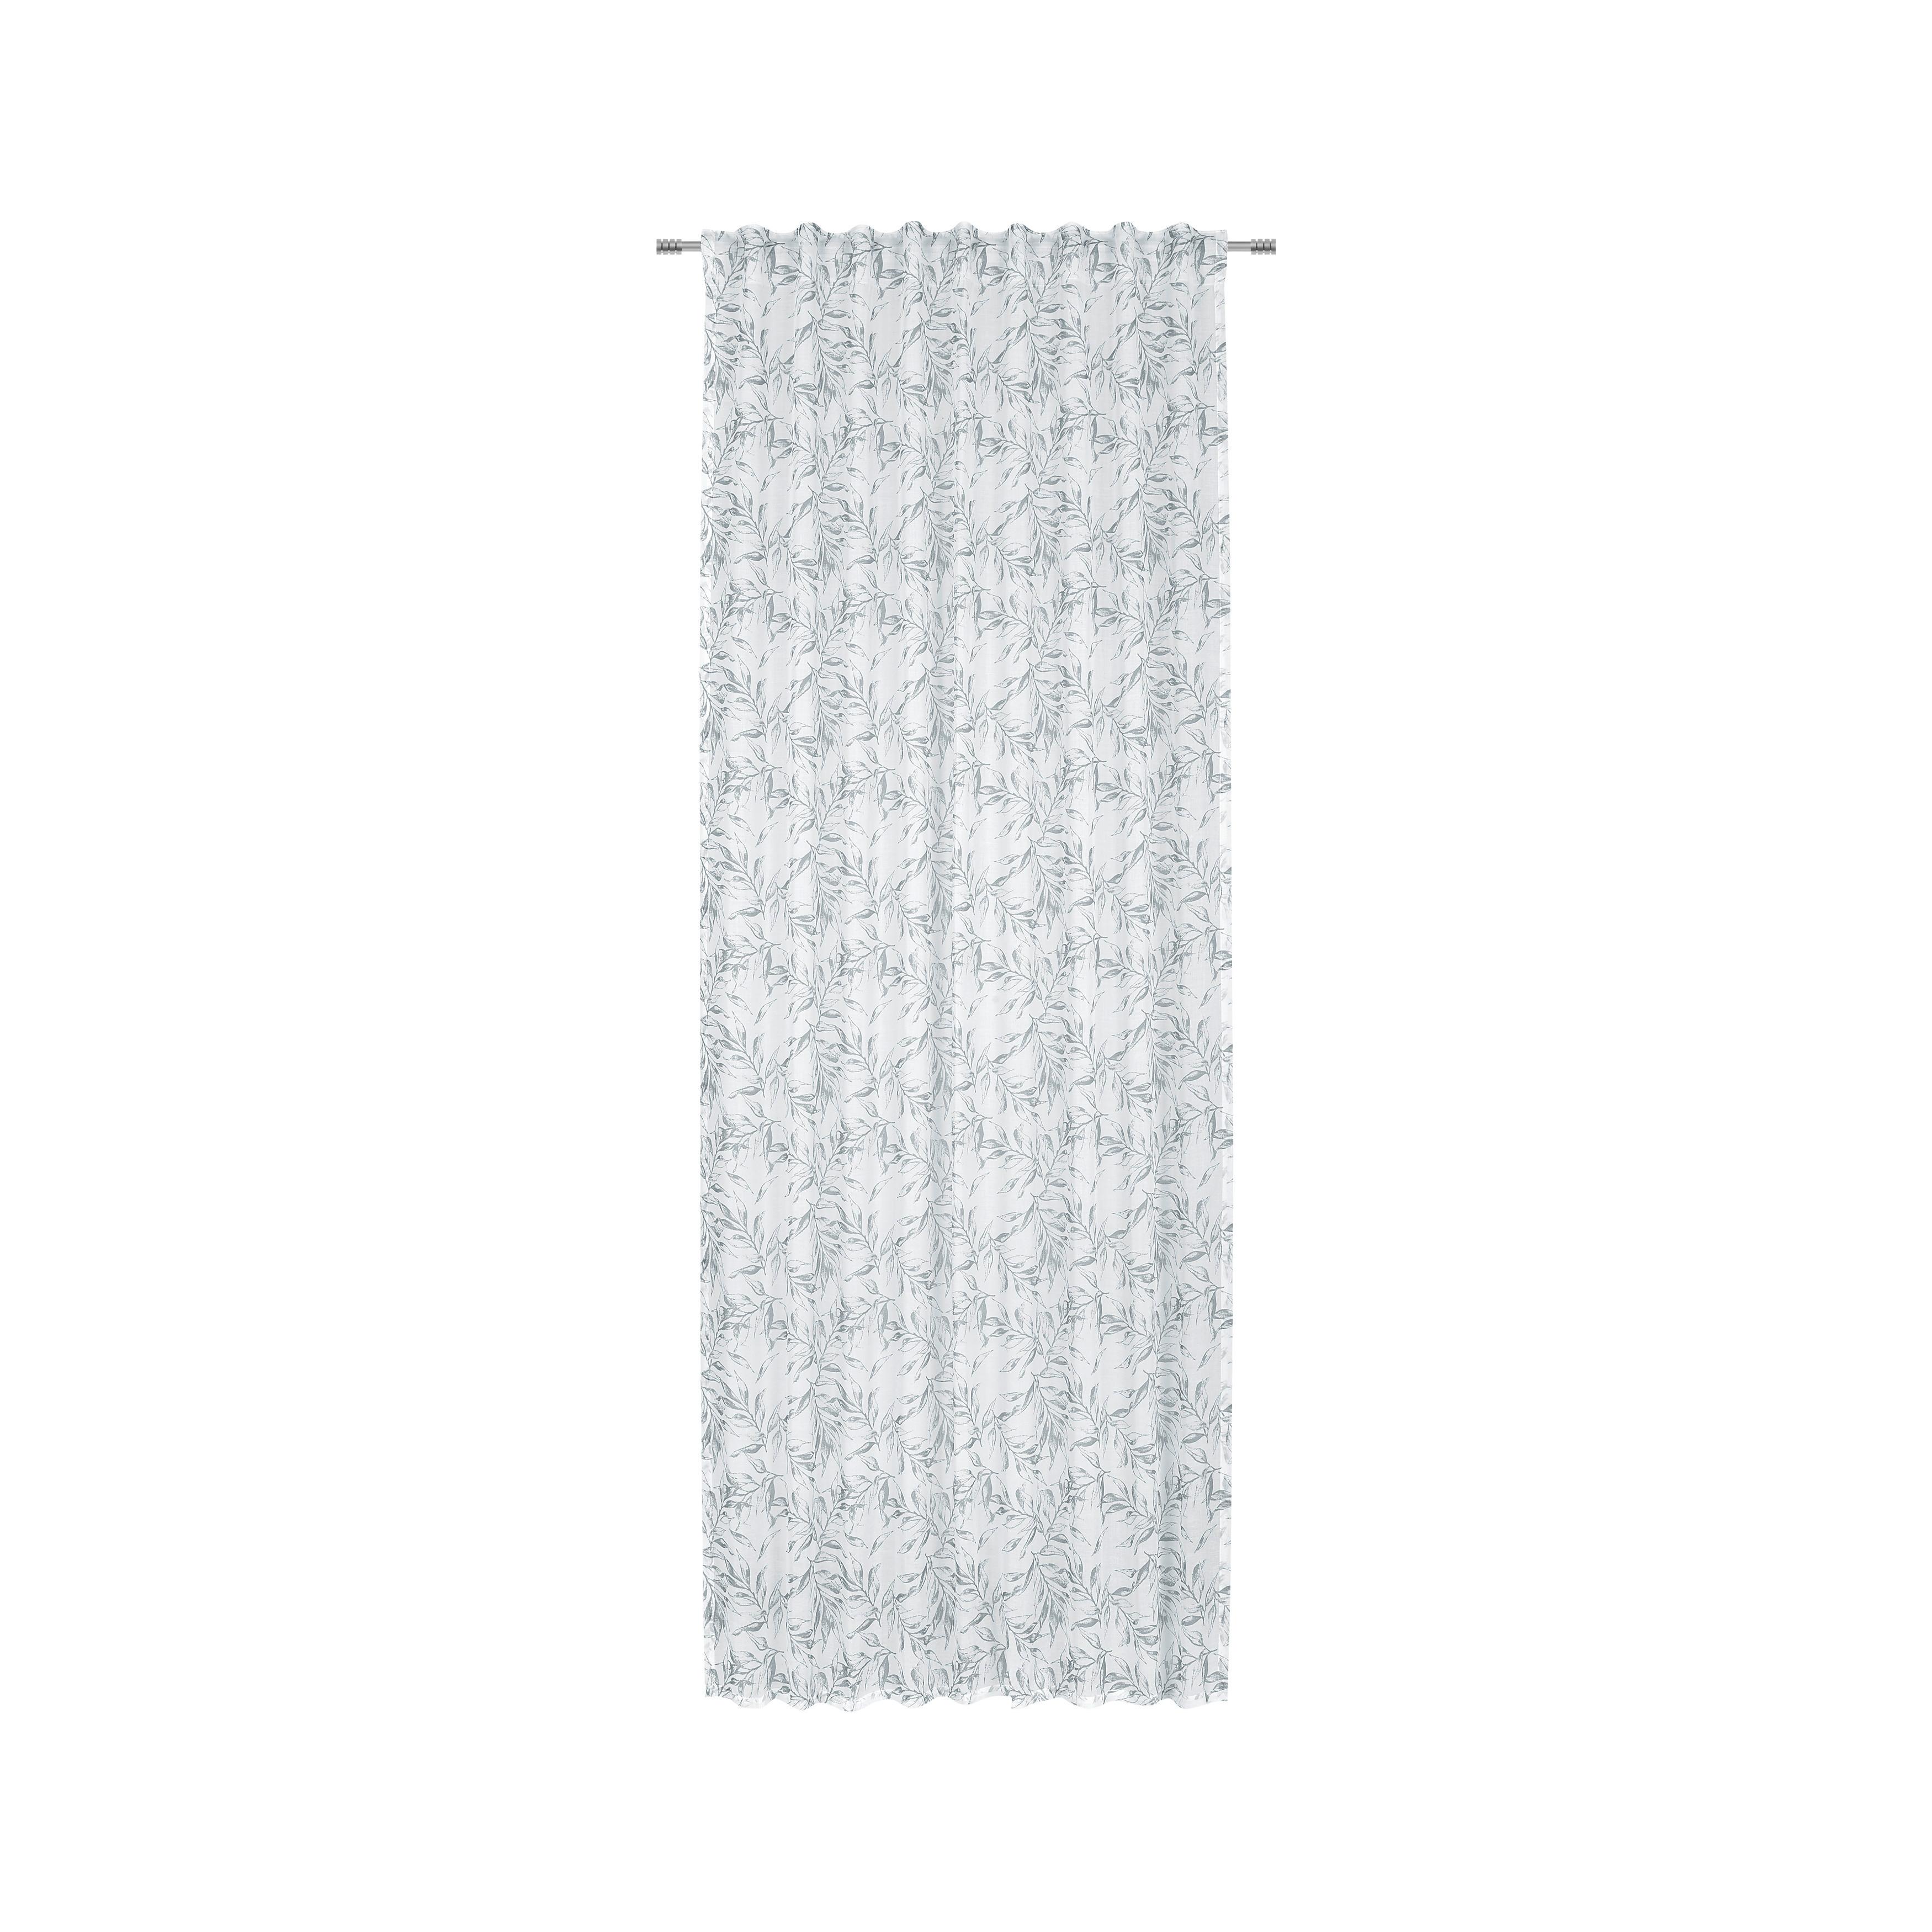 Fertigvorhang Athena ca. 140x245cm - Weiß/Grau, Textil (140/245cm) - Modern Living